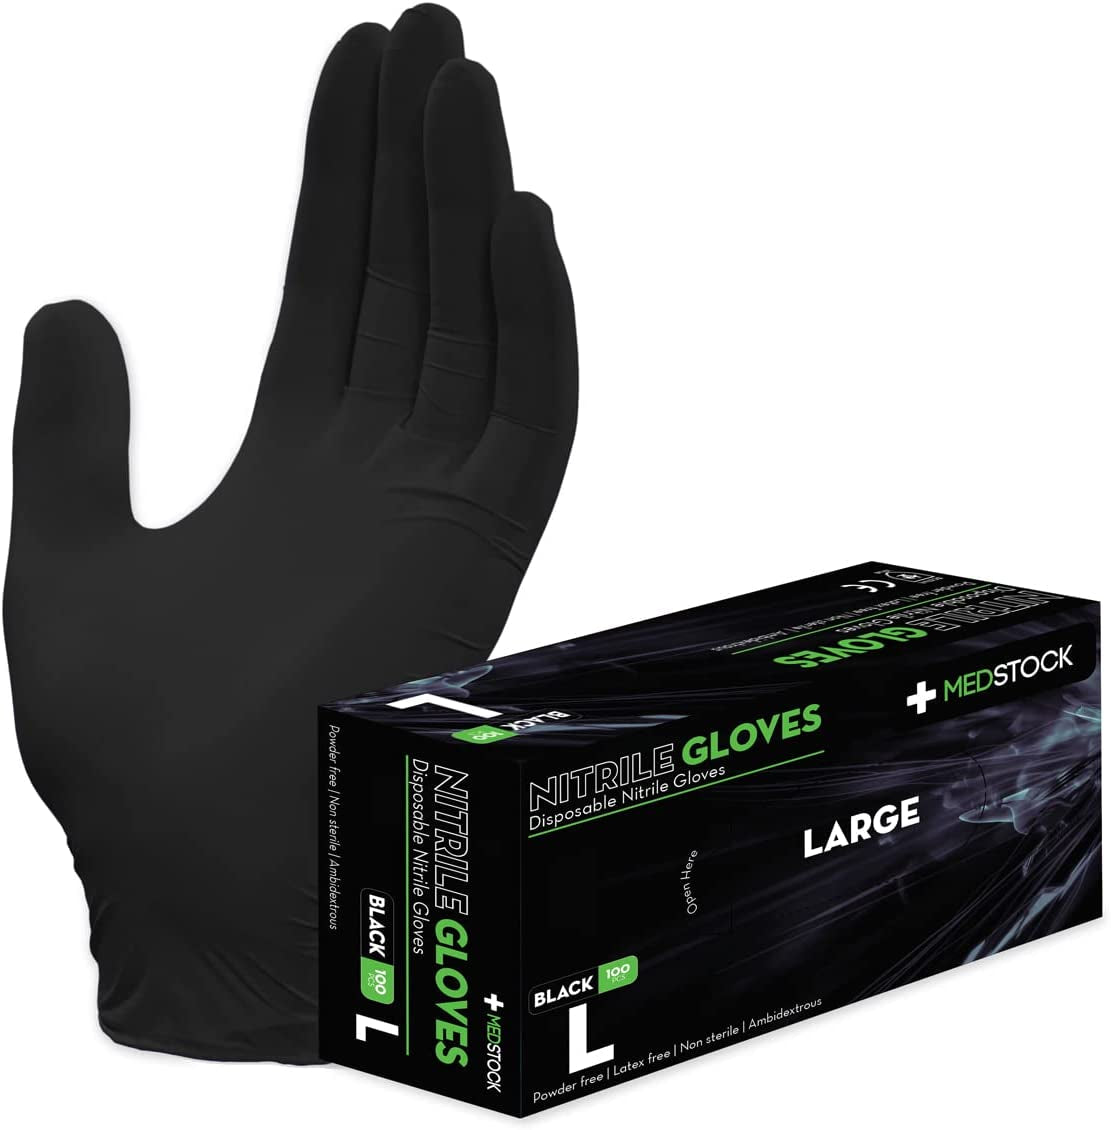 MEDSTOCK, MEDSTOCK BLACK DISPOSABLE NITRILE GLOVES Black Nitrile Gloves | 5.0 Grams | Powder Free | Latex Free | Textured | 100 Pcs